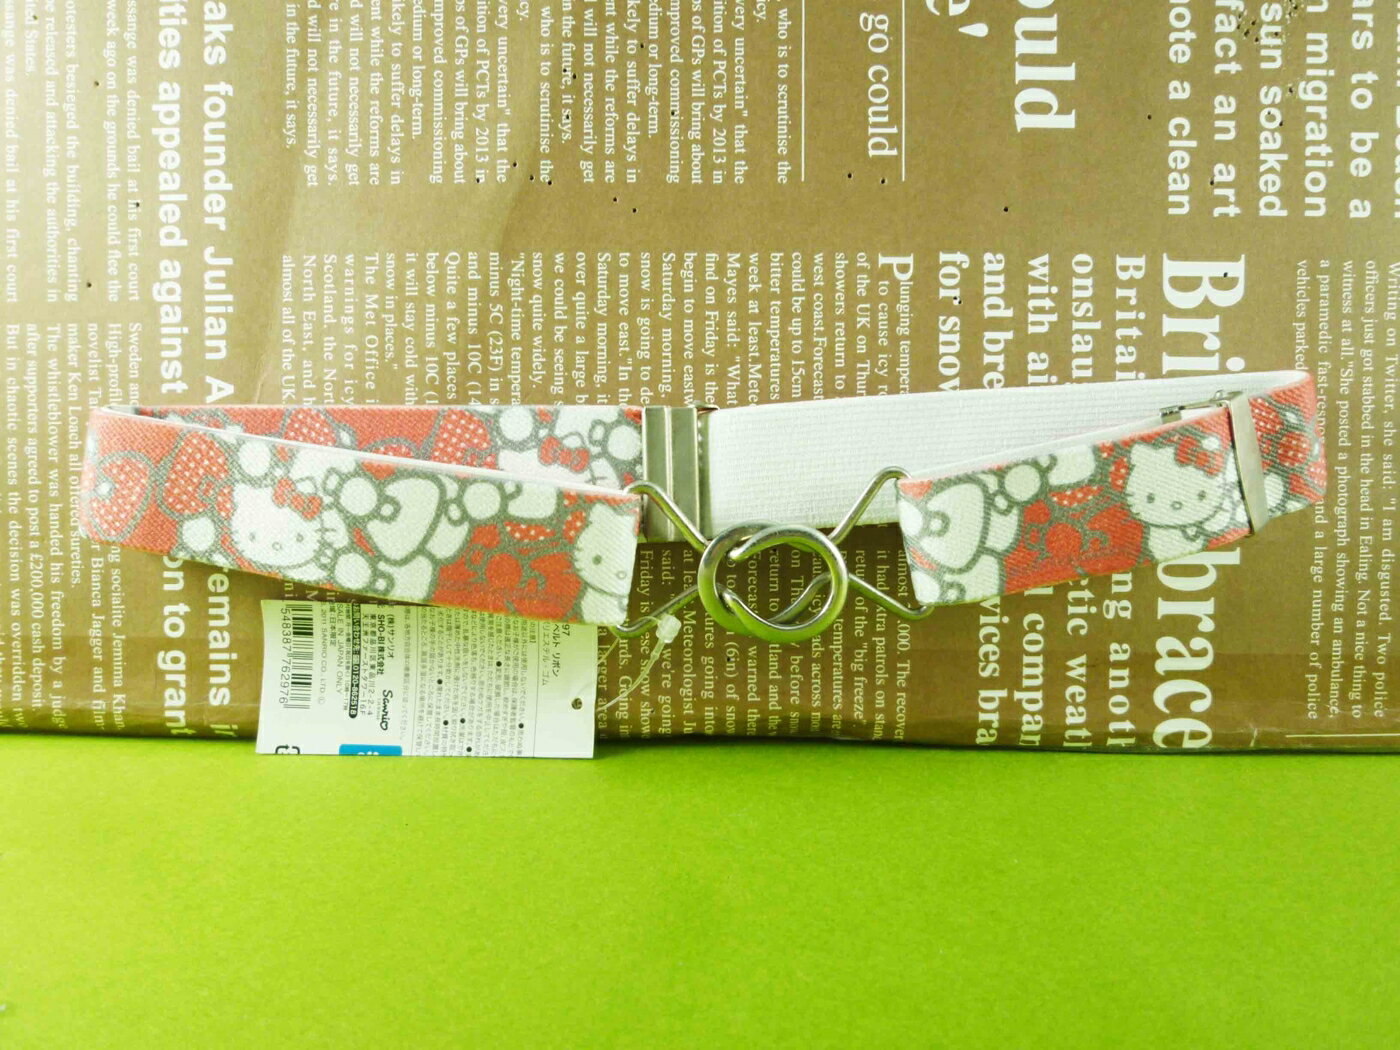 【震撼精品百貨】Hello Kitty 凱蒂貓 造型腰帶 紅緞帶【共1款】 震撼日式精品百貨